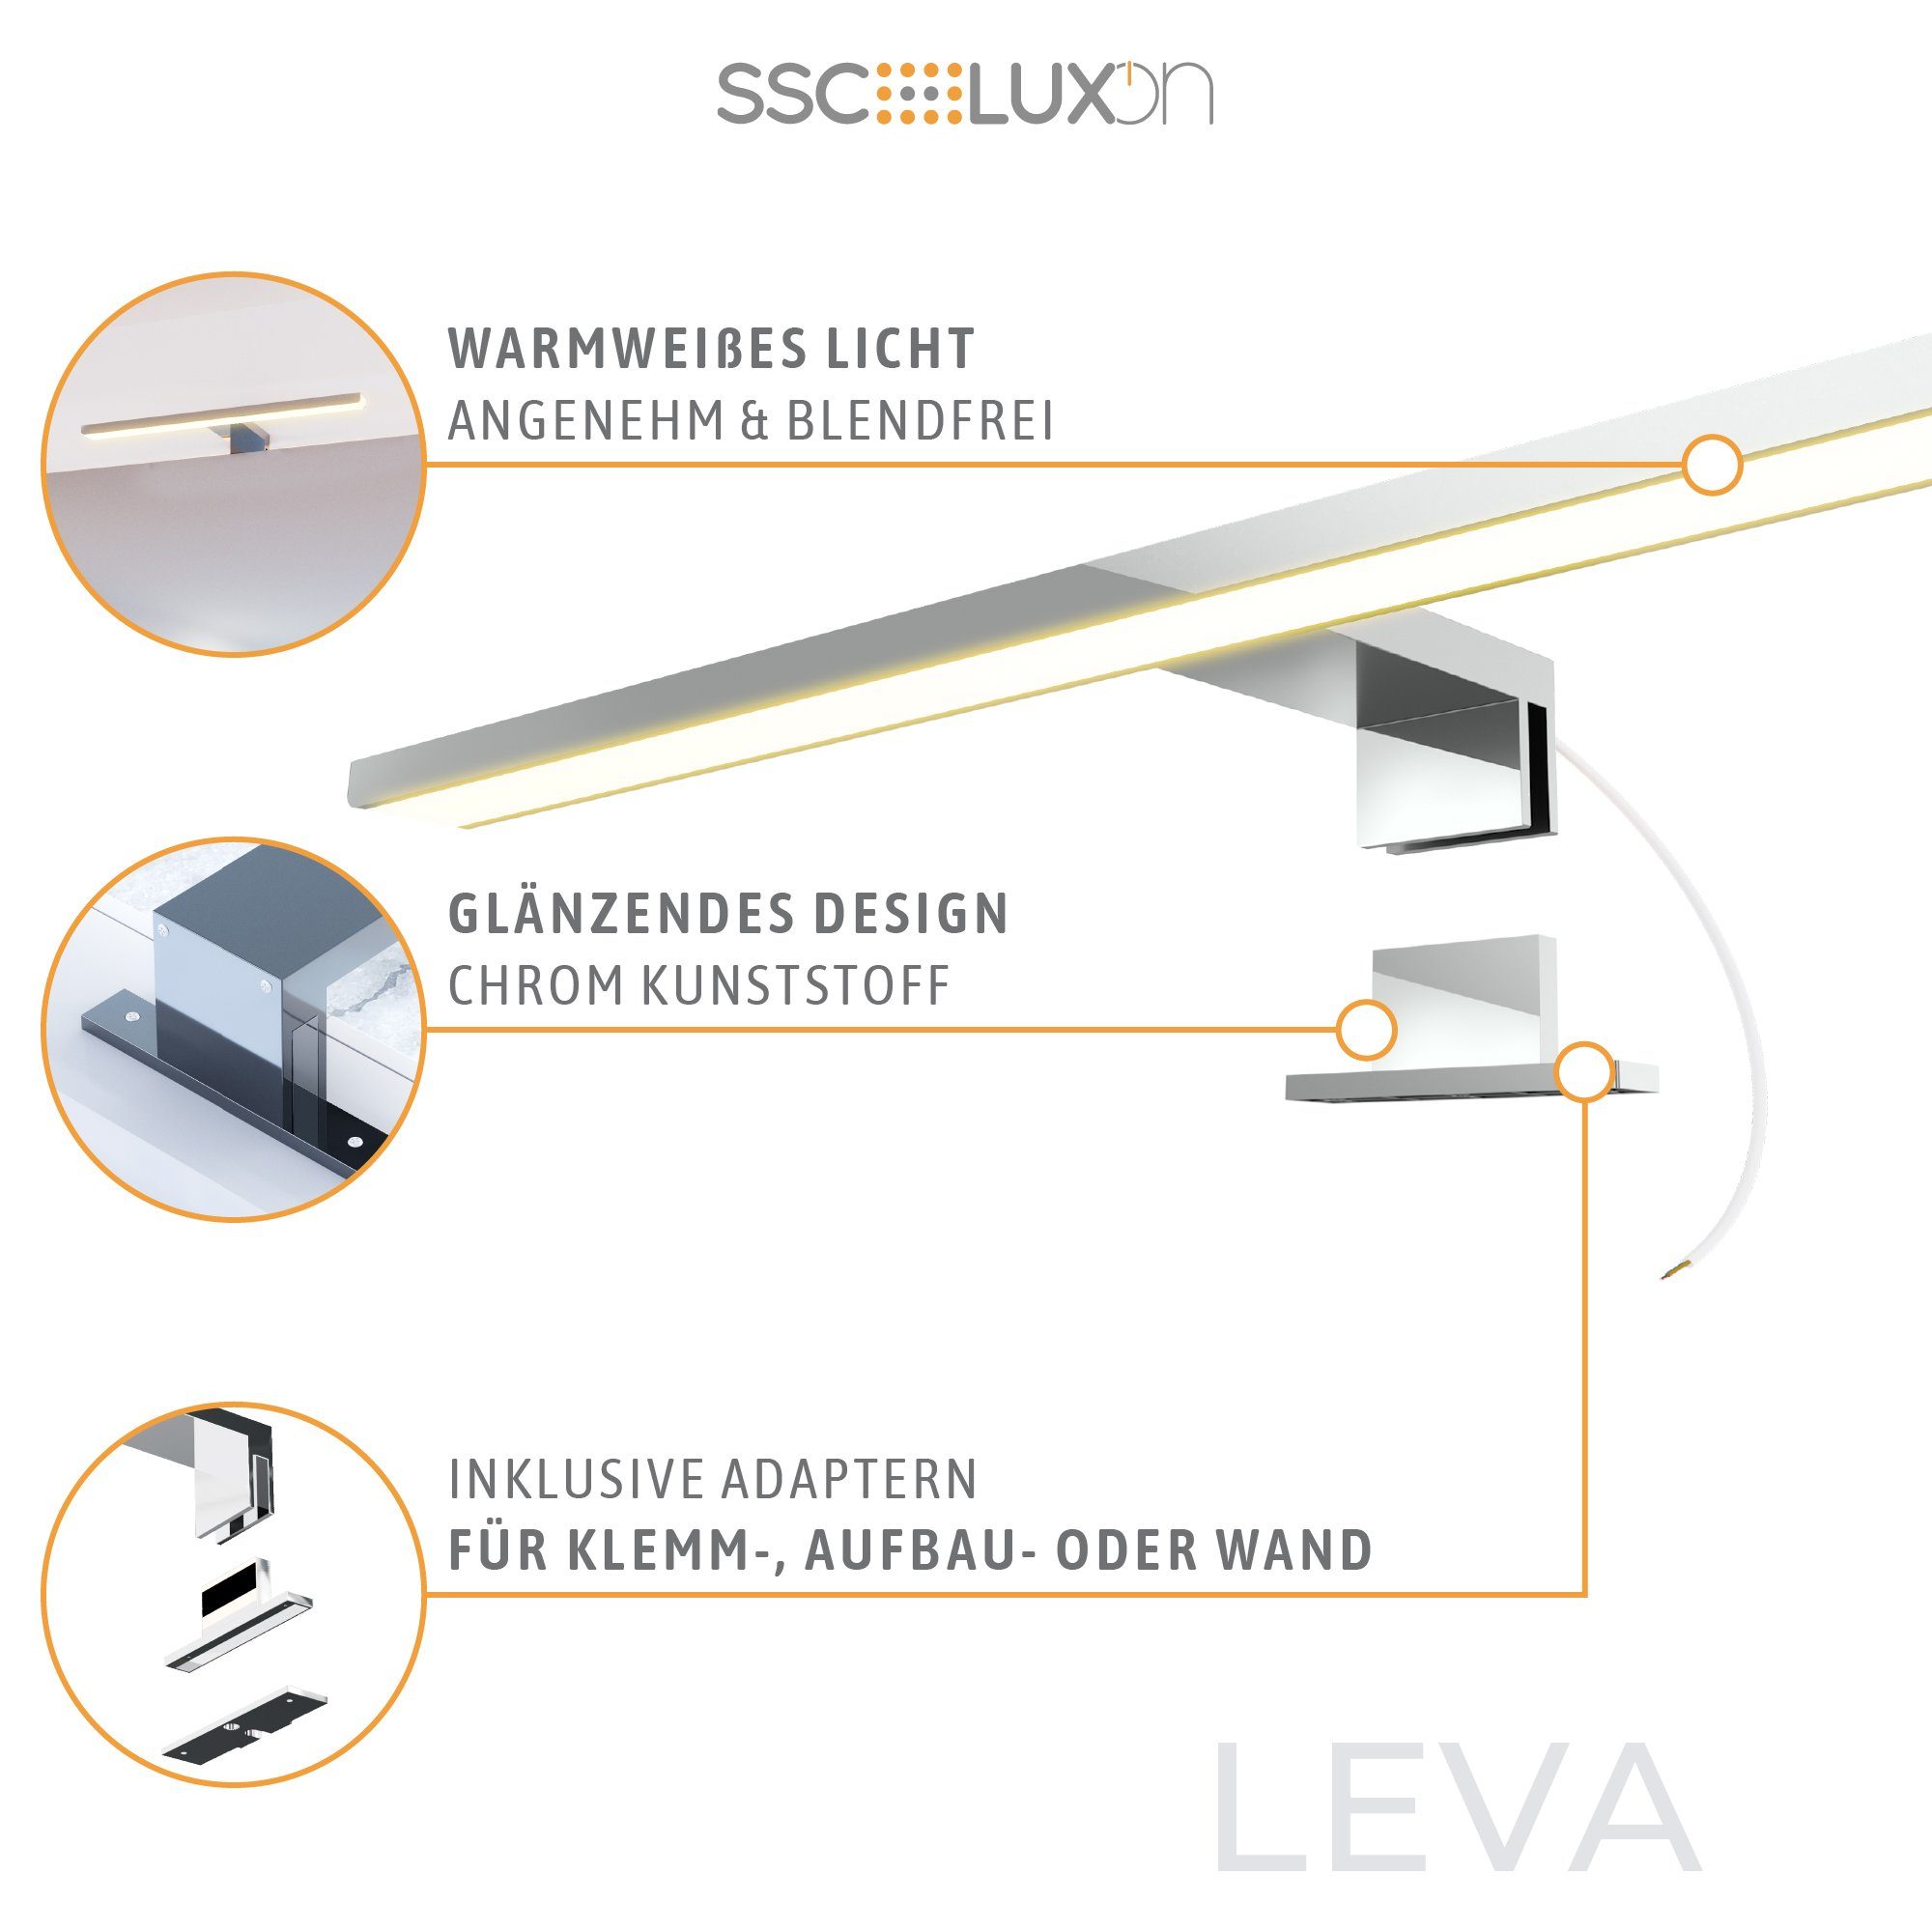 SSC-LUXon LEVA Design 50cm IP44, 3-in-1 Warmweiß LED Spiegelleuchte Bad warmweiss 230V LED Bilderleuchte 9W